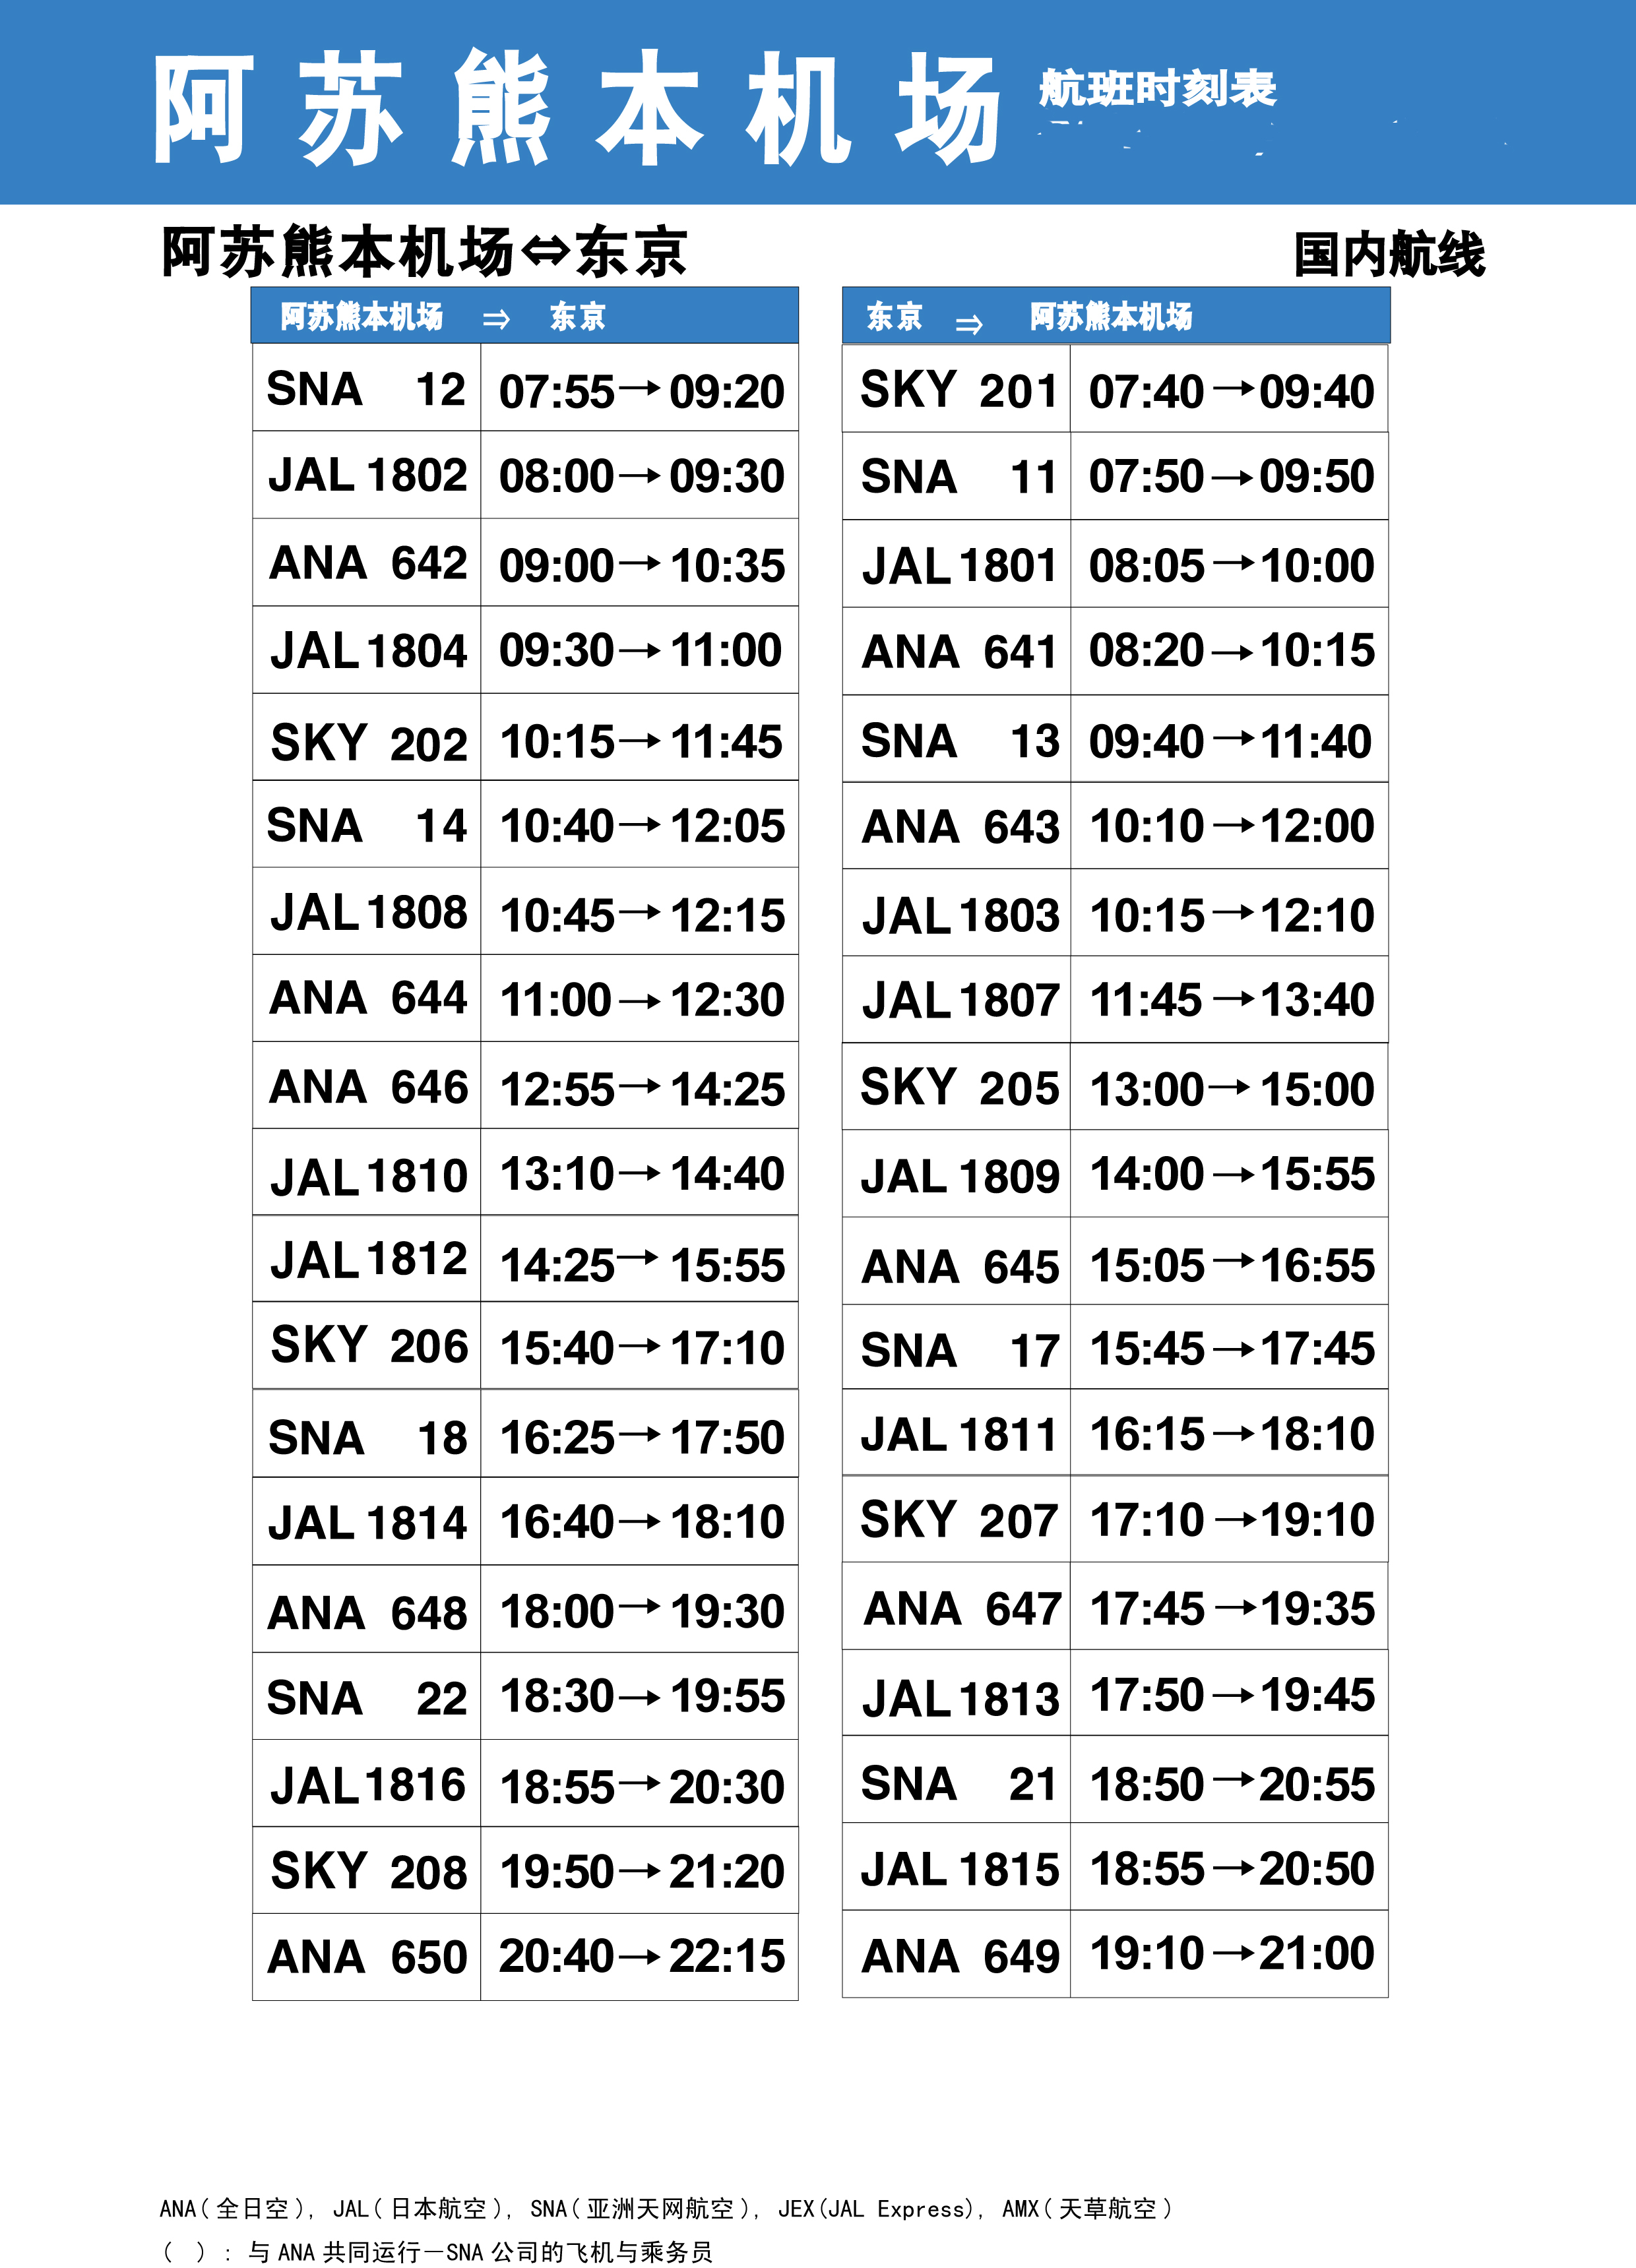 熊本机场的国内航班信息